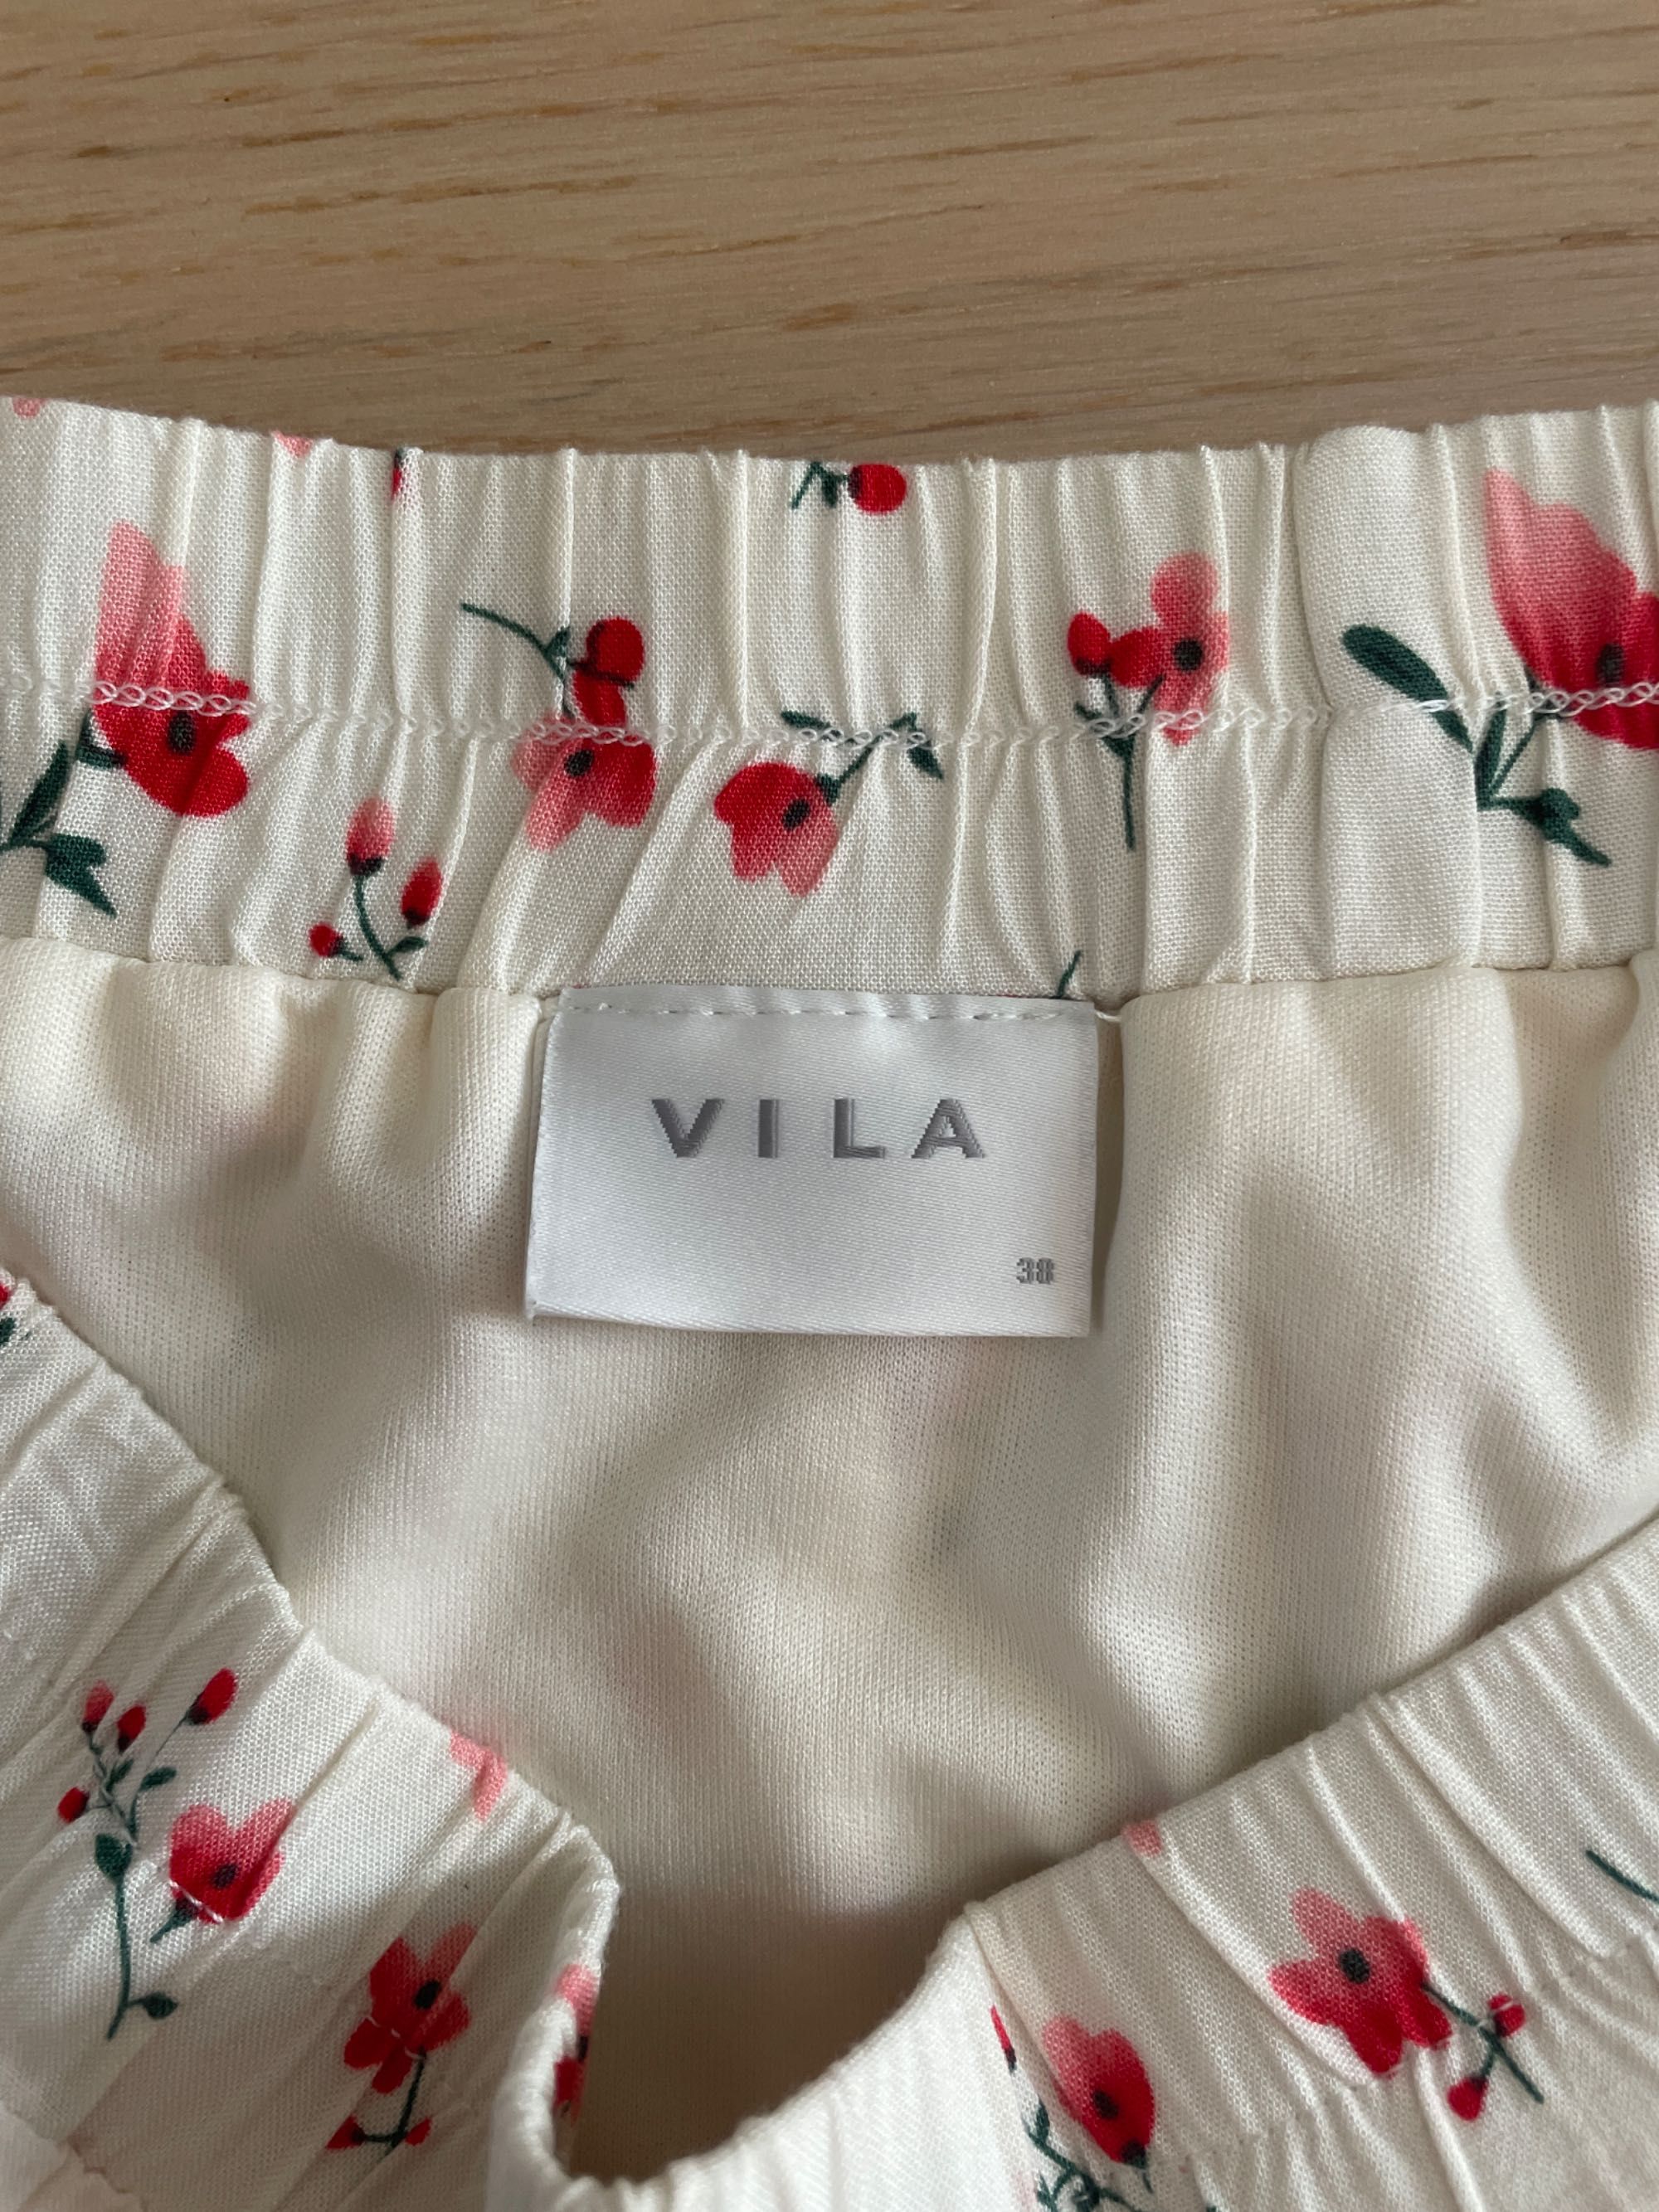 Krótka spódnica w czerwone kwiatki, wiskoza, Vila, 38